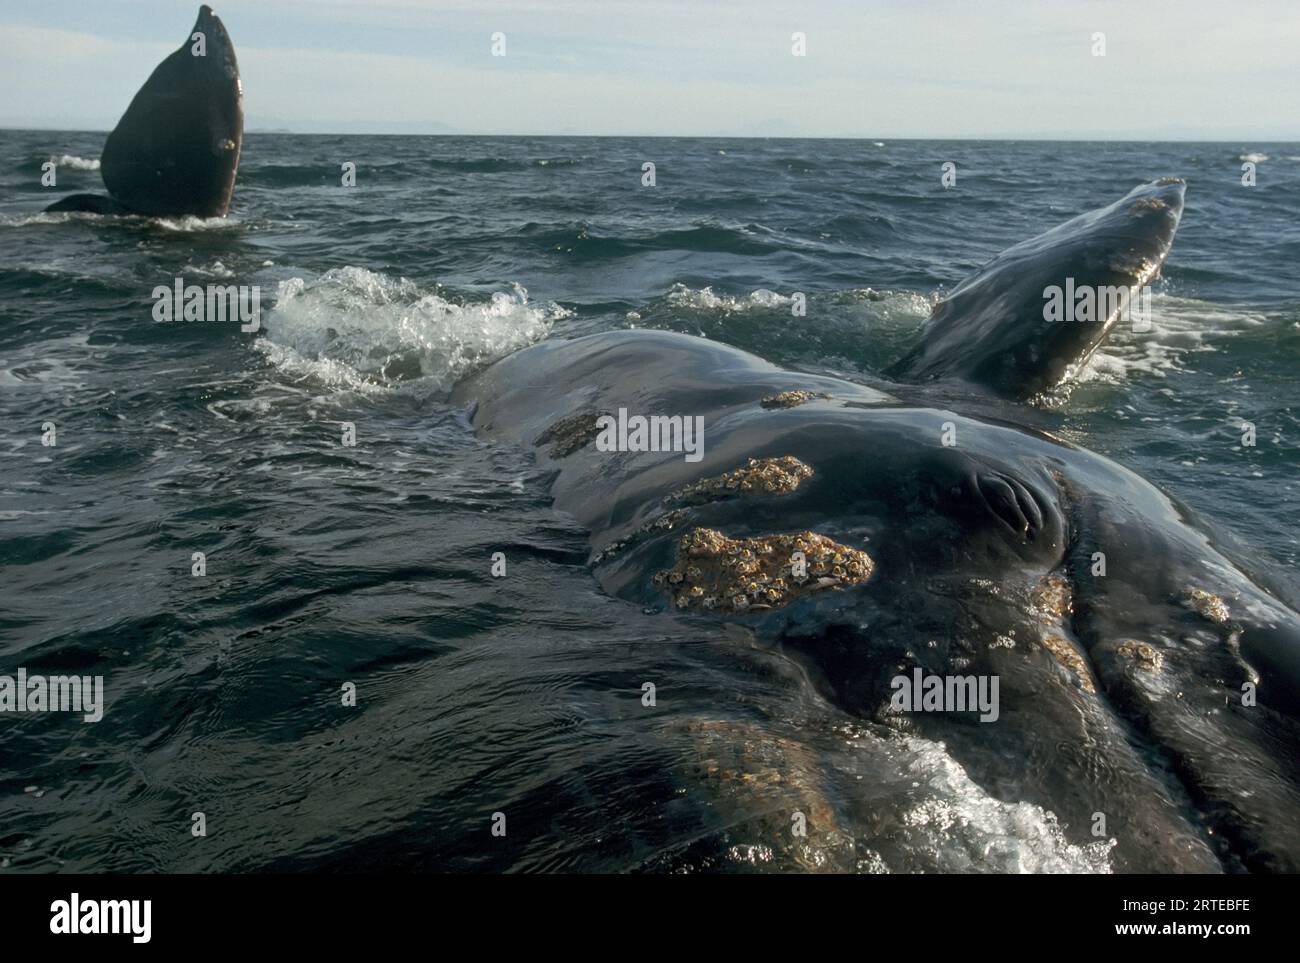 Alla ricerca di un contatto con una specie ormai amica, una balena grigia (Eschrichtius glaucus) segue una barca per l'avvistamento delle balene in questo vivaio invernale per i grandi... Foto Stock